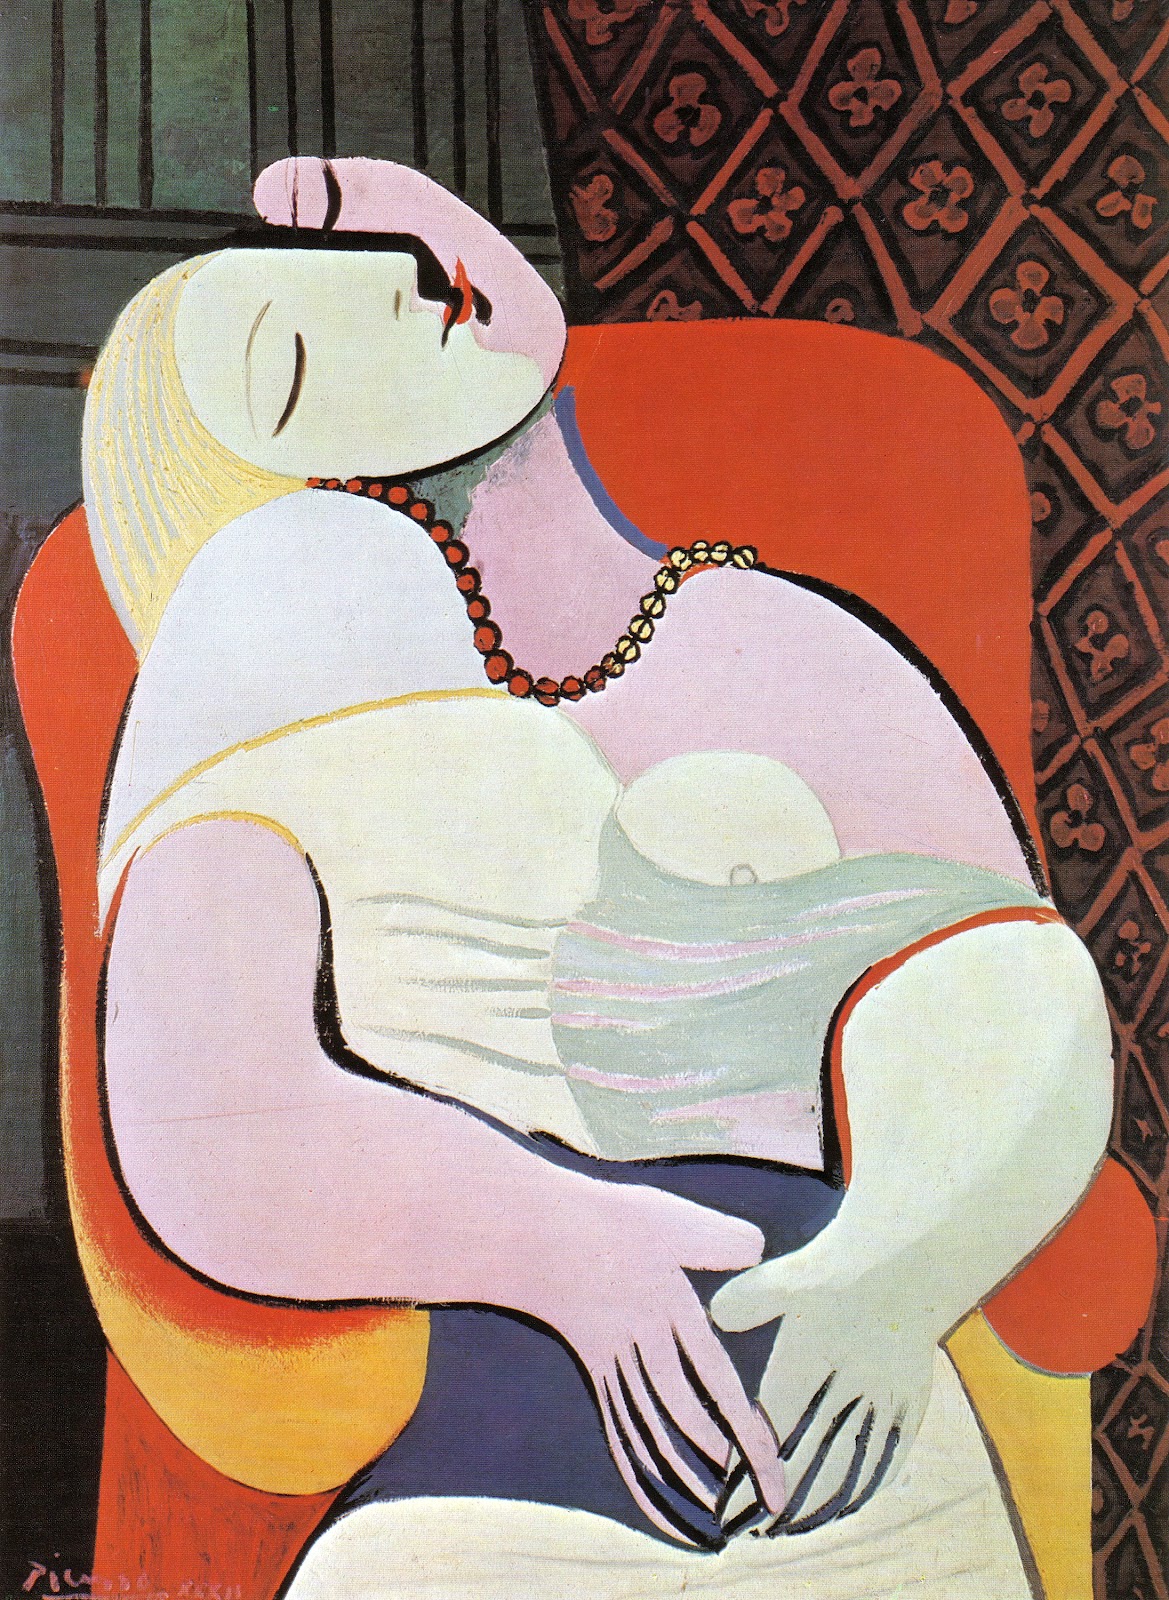 De Droom by Pablo Picasso - 1932 - 130 cm × 97 cm 